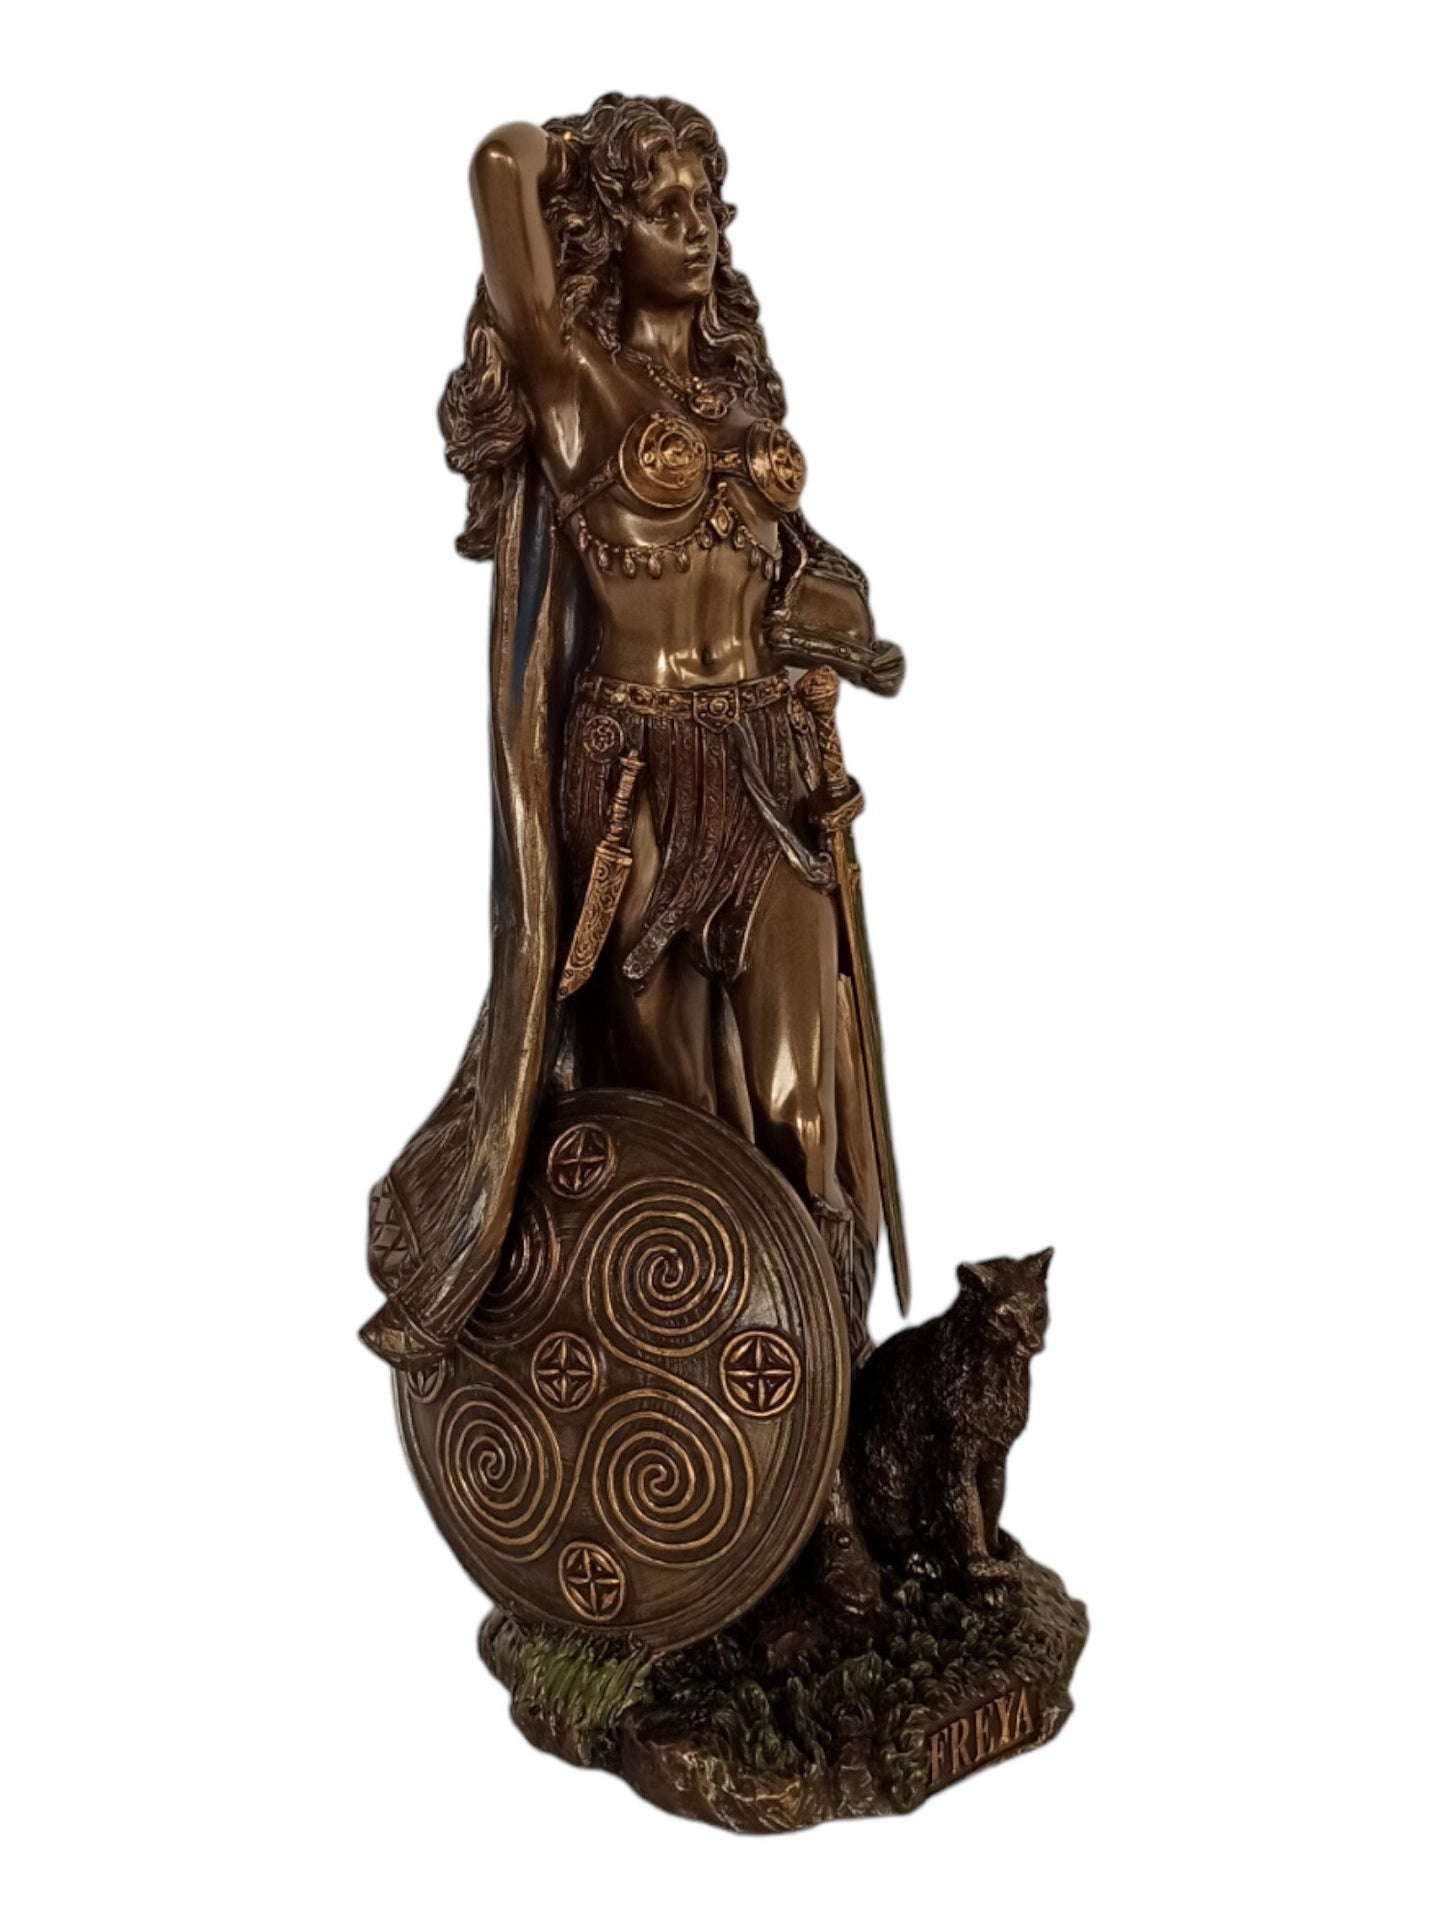 Freya Freyja - Norse Goddess associated with Love, Beauty, Fertility, Sex, War, Gold, and Seiðr - Cold Cast Bronze Resin